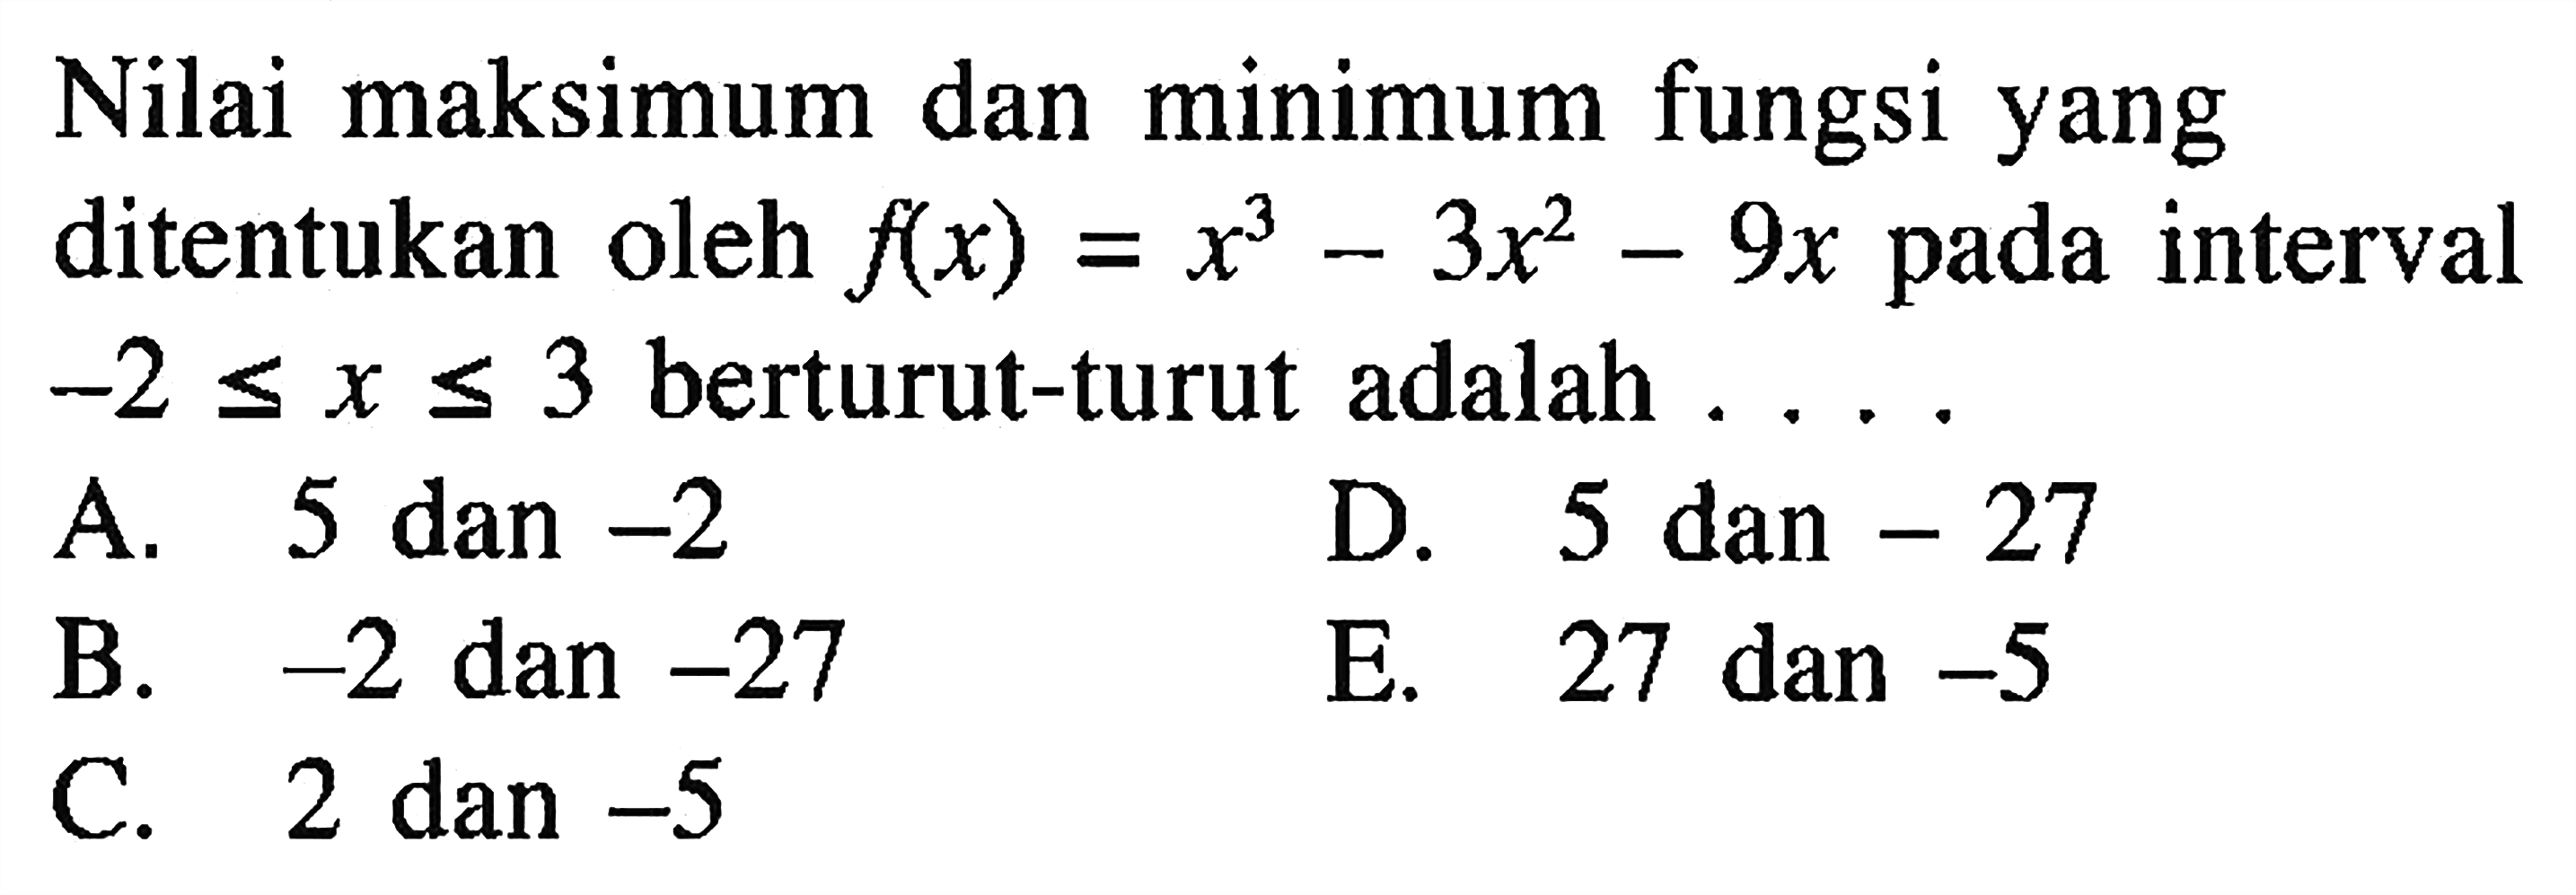 Nilai maksimum dan minimum fungsi yang ditentukan oleh f(x)=x^3-3x^2-9x pada interval -2 <= x <= 3 berturut-turut adalah .... 